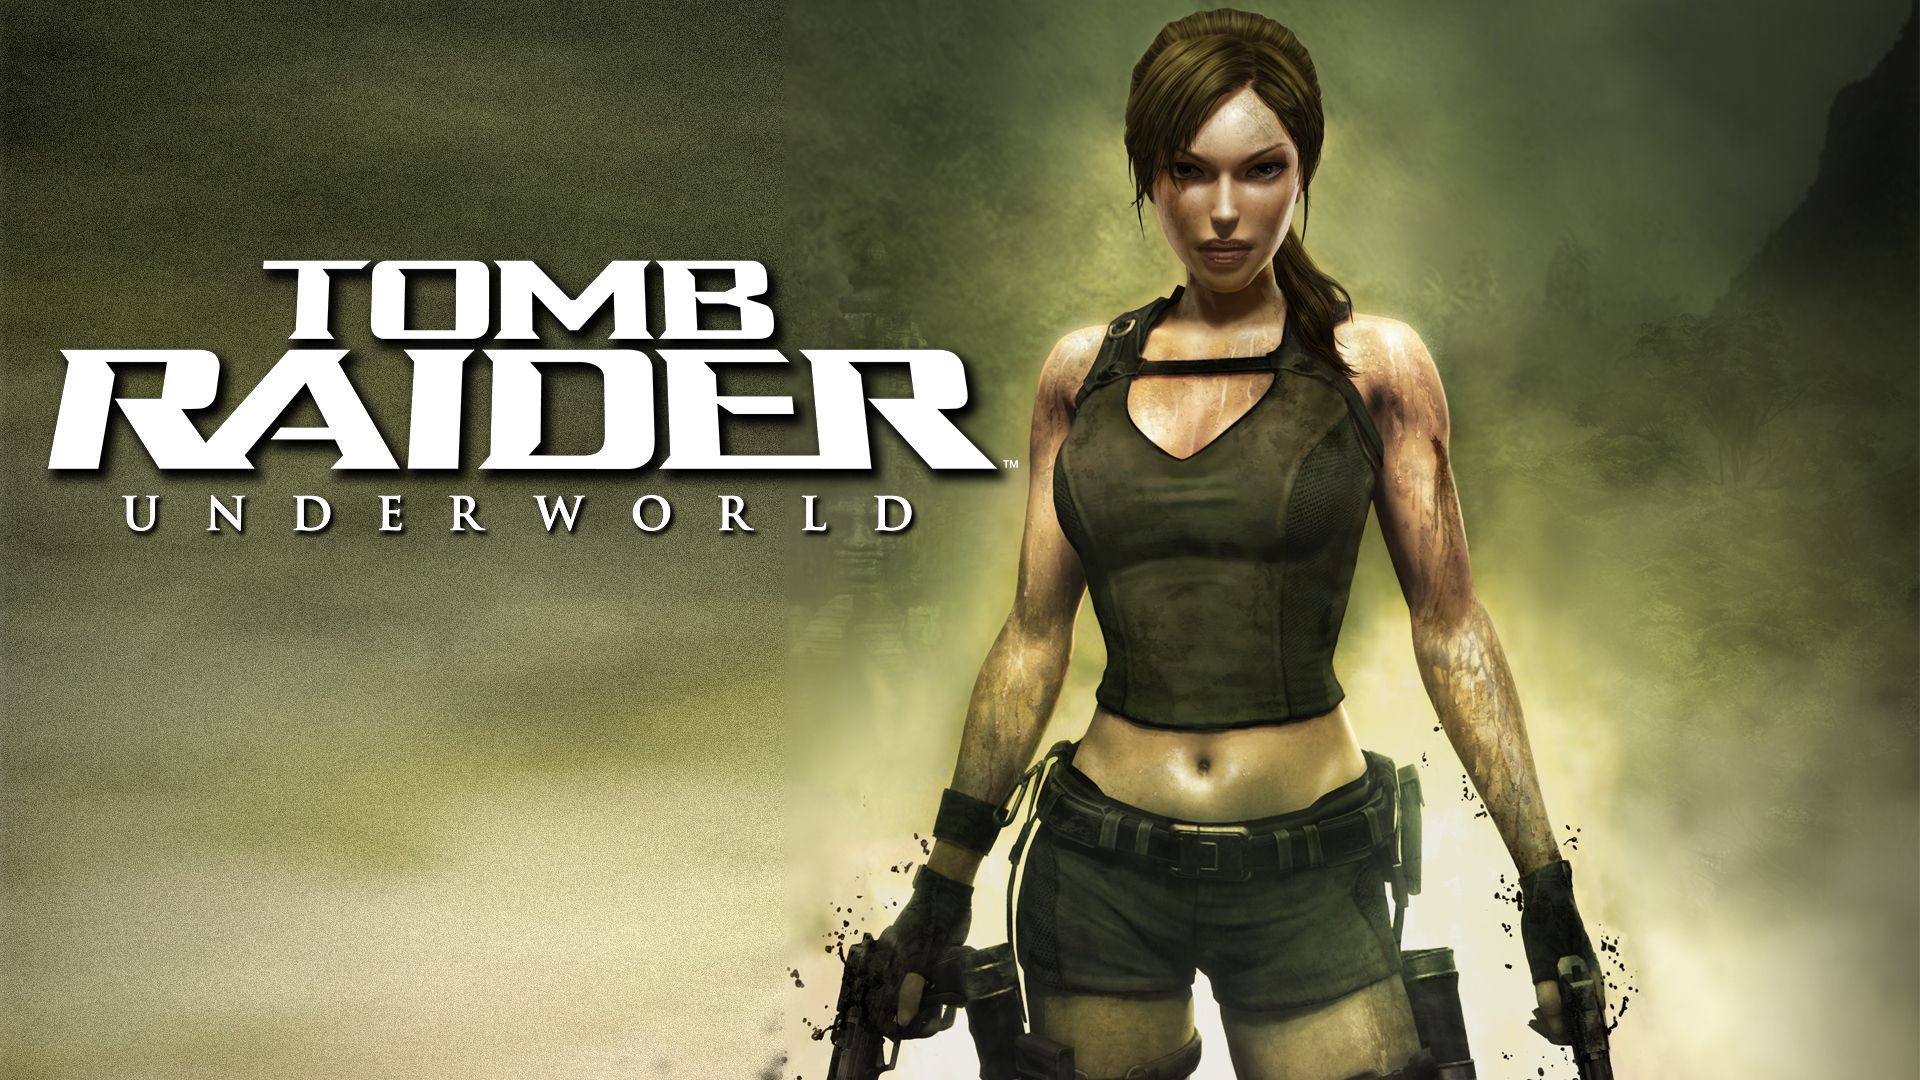 Прохождение игры Tomb Raider: Underworld # 15. HD - Full 1080p. (Русская версия игры) Конец игры!